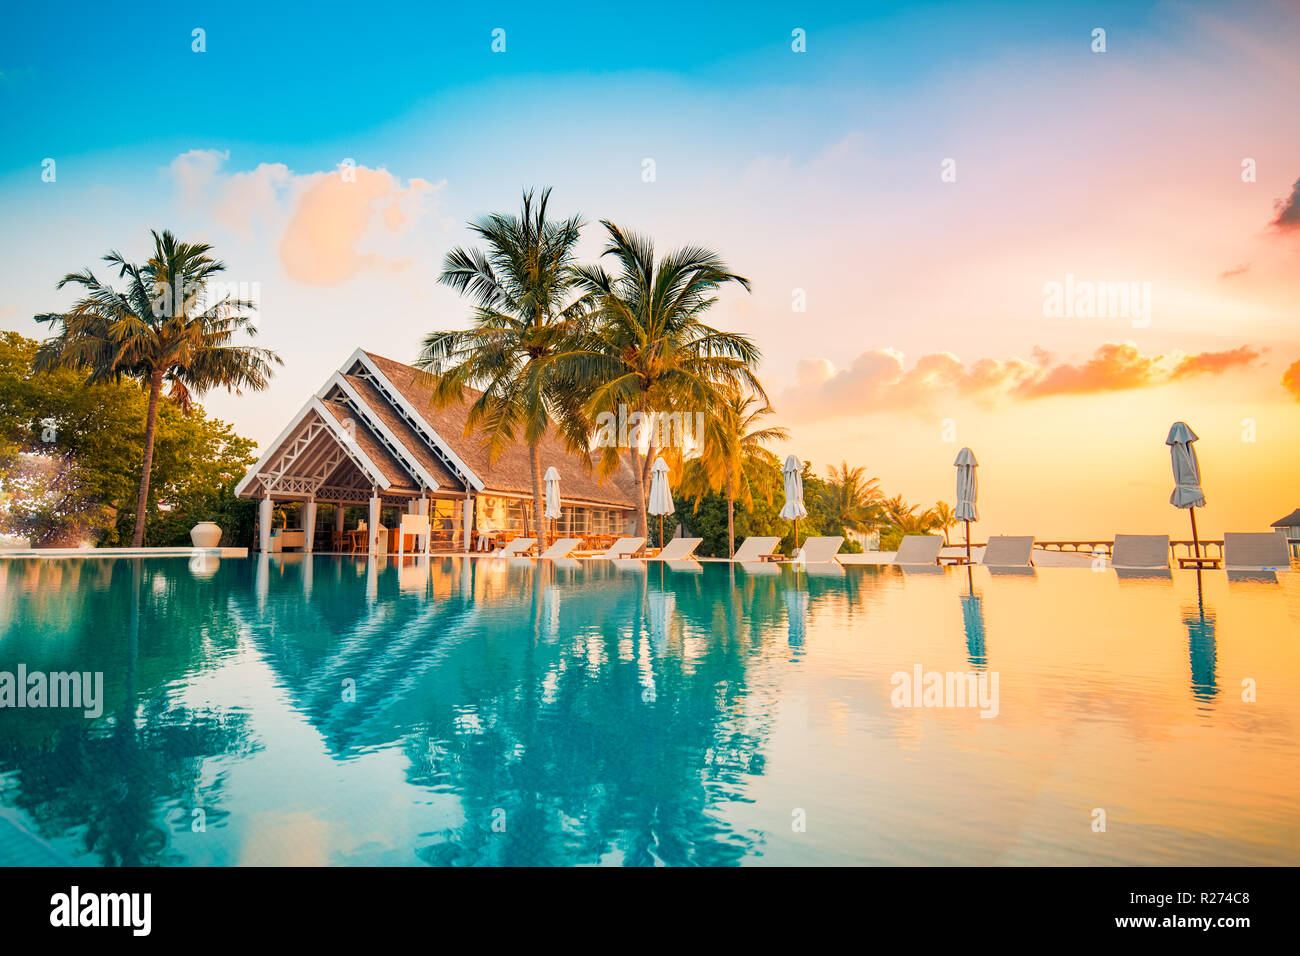 Hermosa piscina y sunset sky. Lujoso paisaje tropical en la playa, hamacas y tumbonas y el reflejo del agua. Foto de stock